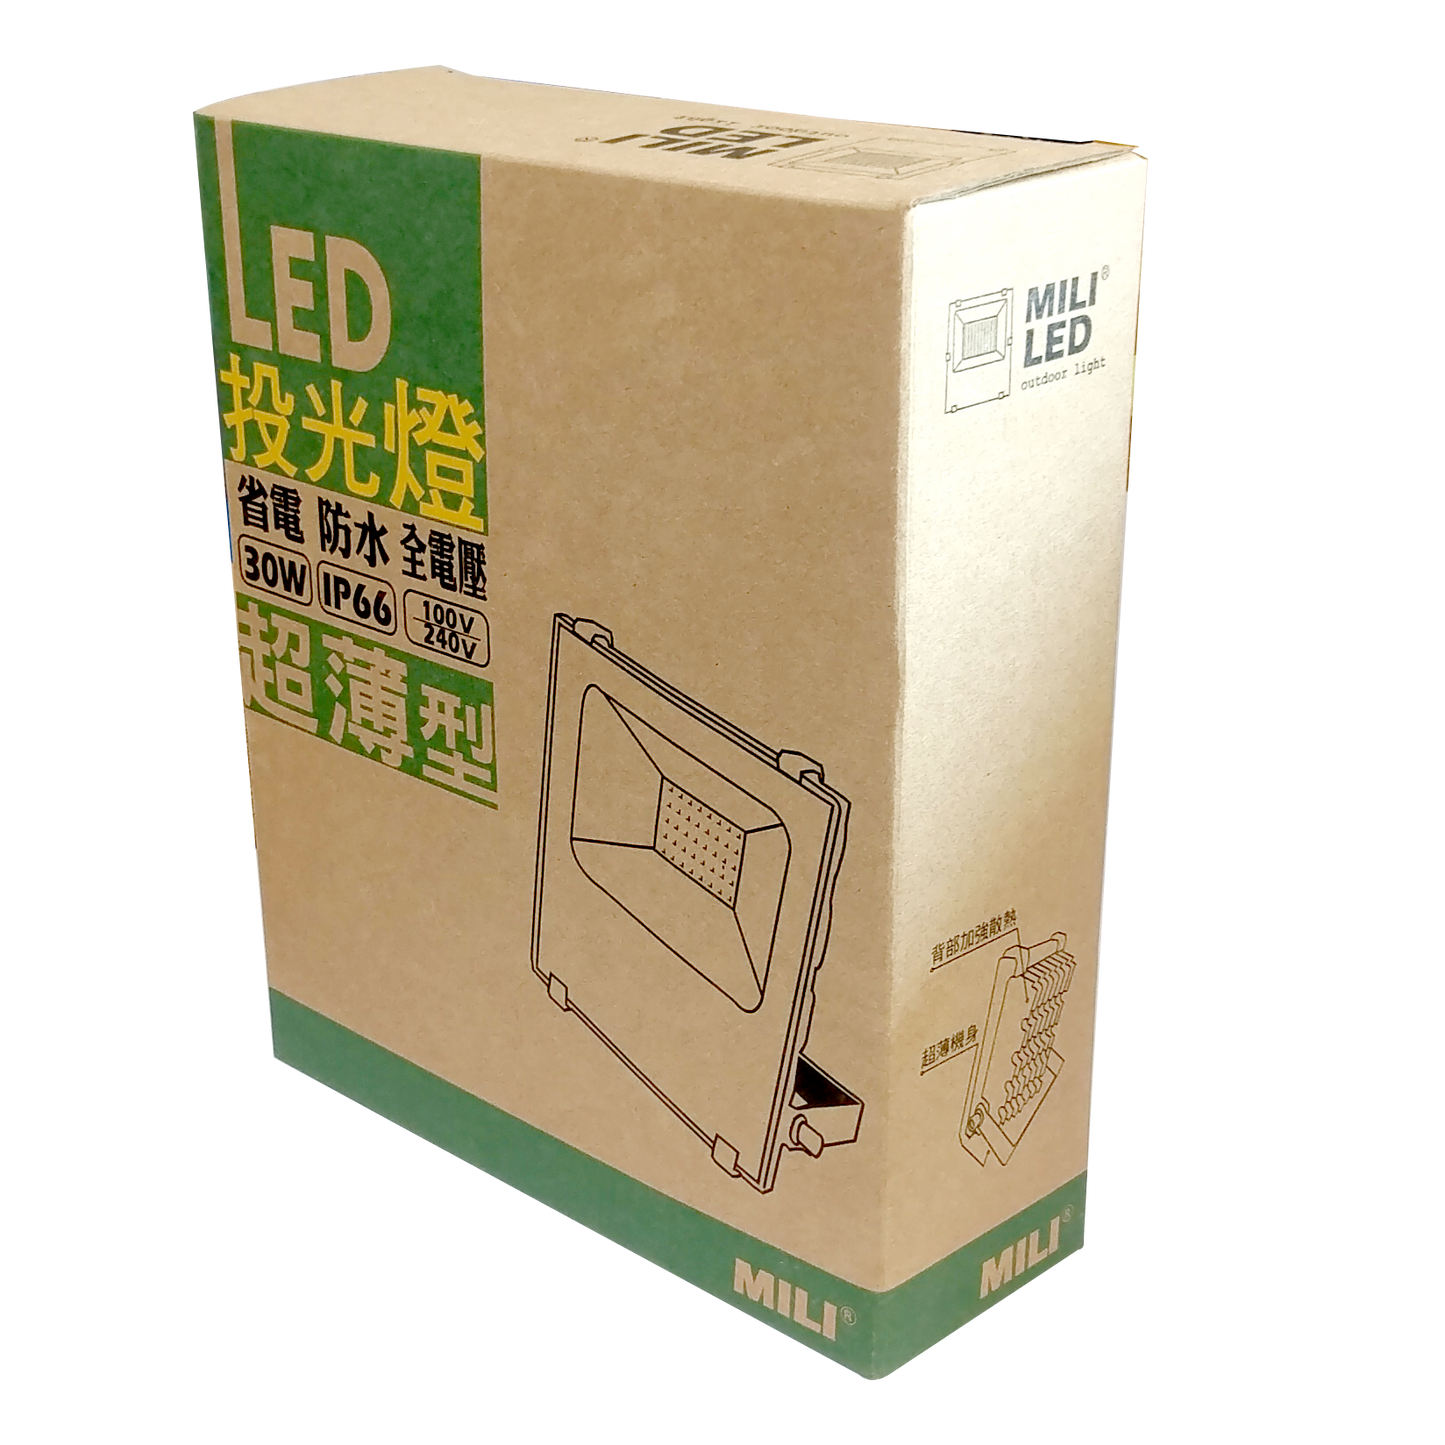 LED超薄型SMD 30W投光燈